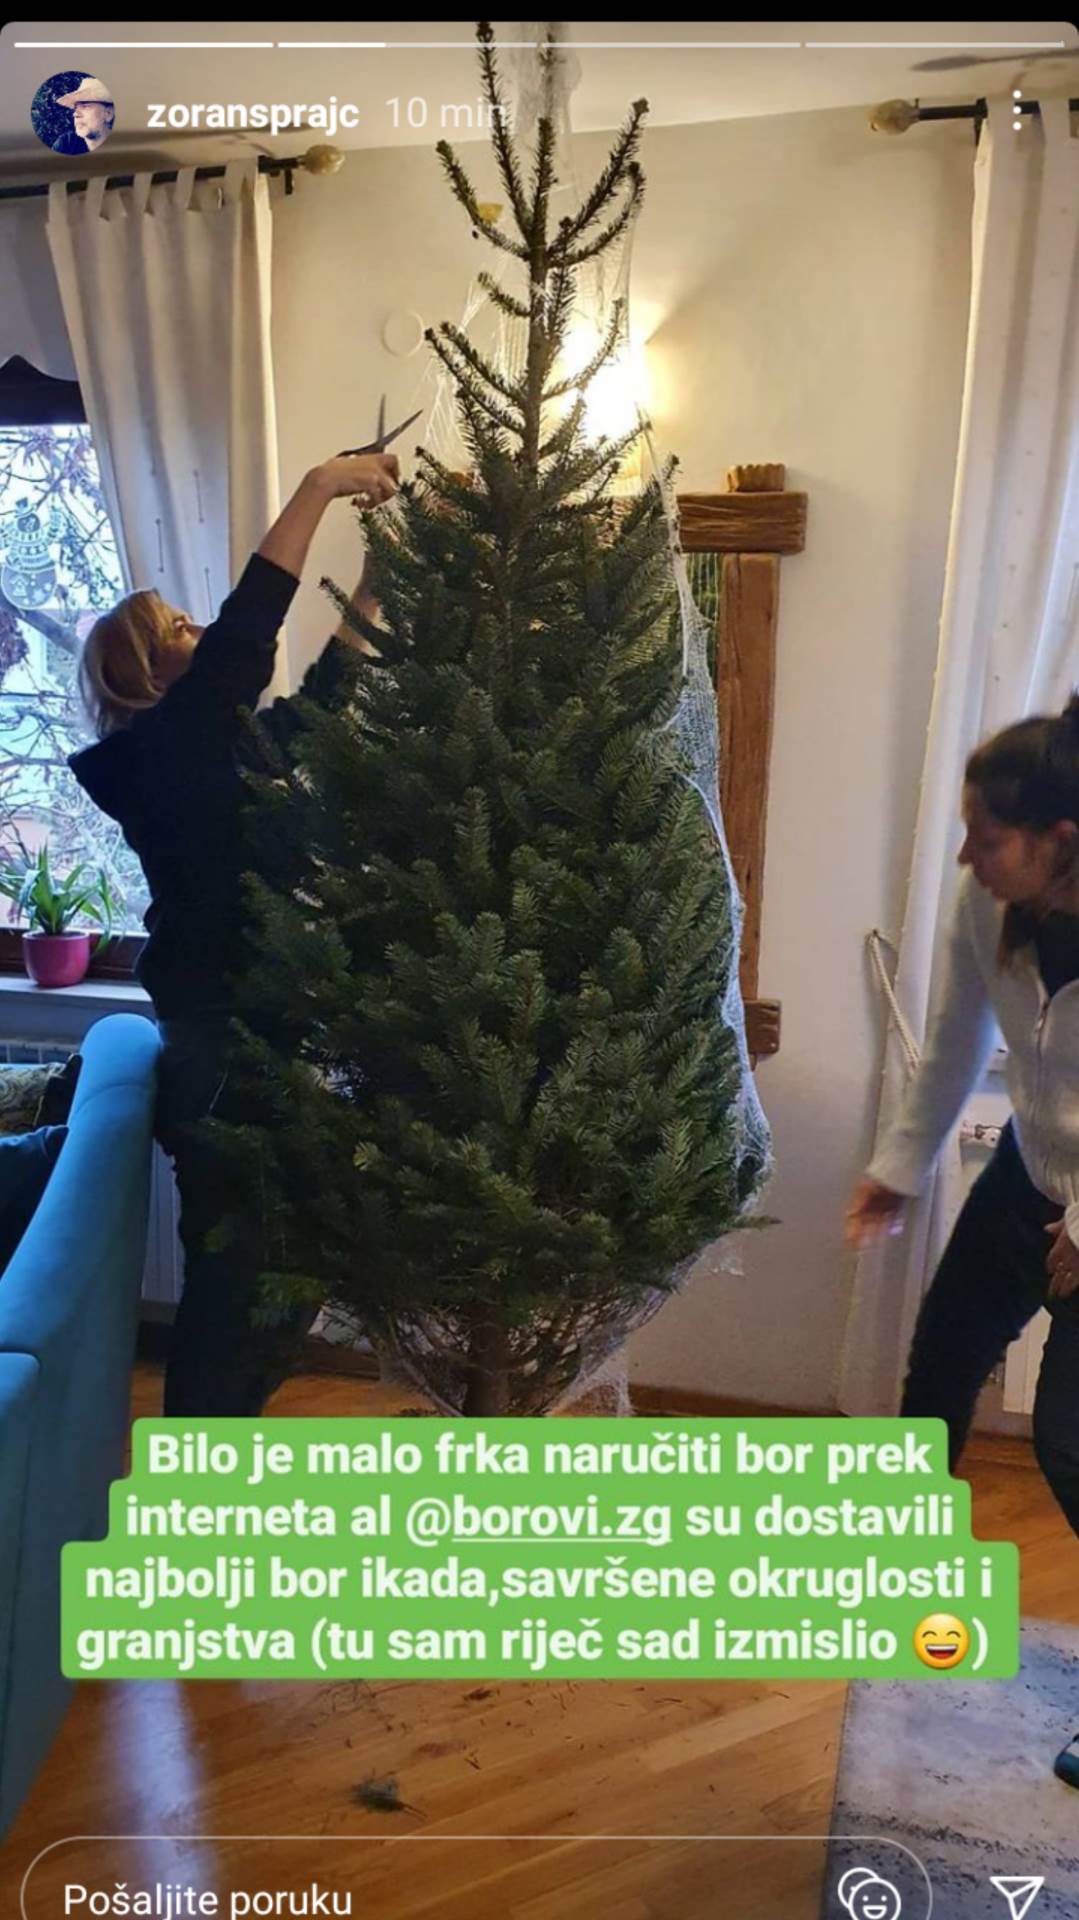 POSAO ZA PAPA ŠTRUMPFA Ovako je Zoran Šprajc okitio božićno drvce